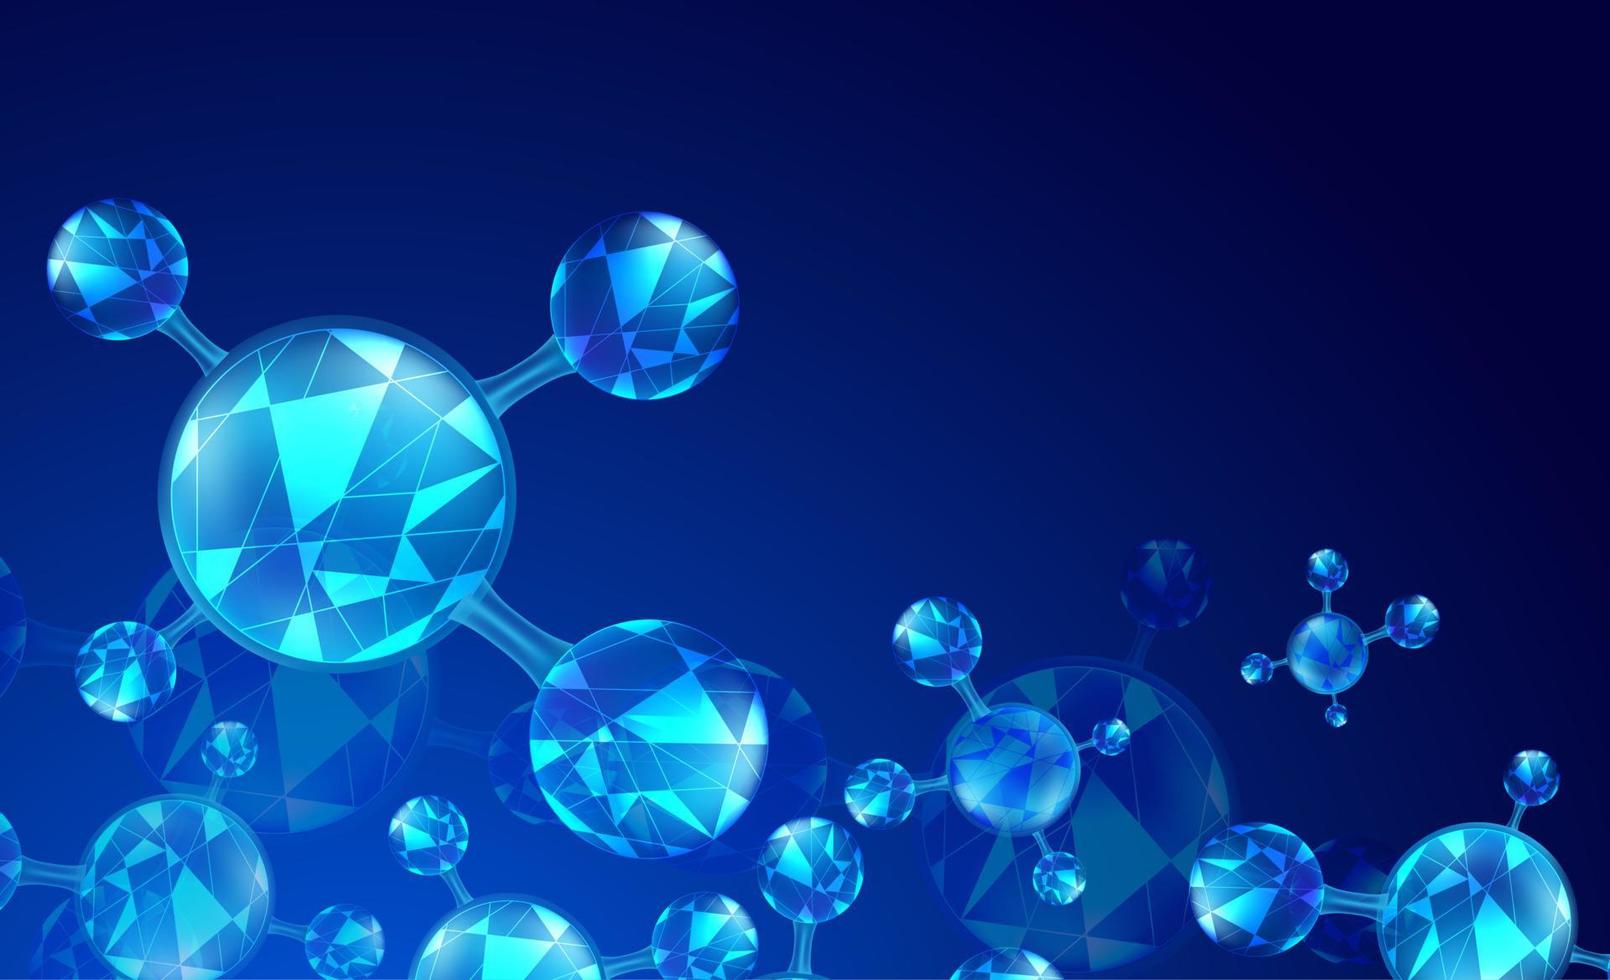 formation scientifique abstraite avec des éléments de molécules. fond bleu dégradé avec molécule d'adn pour les concepts médicaux, scientifiques et technologiques. illustration vectorielle vecteur